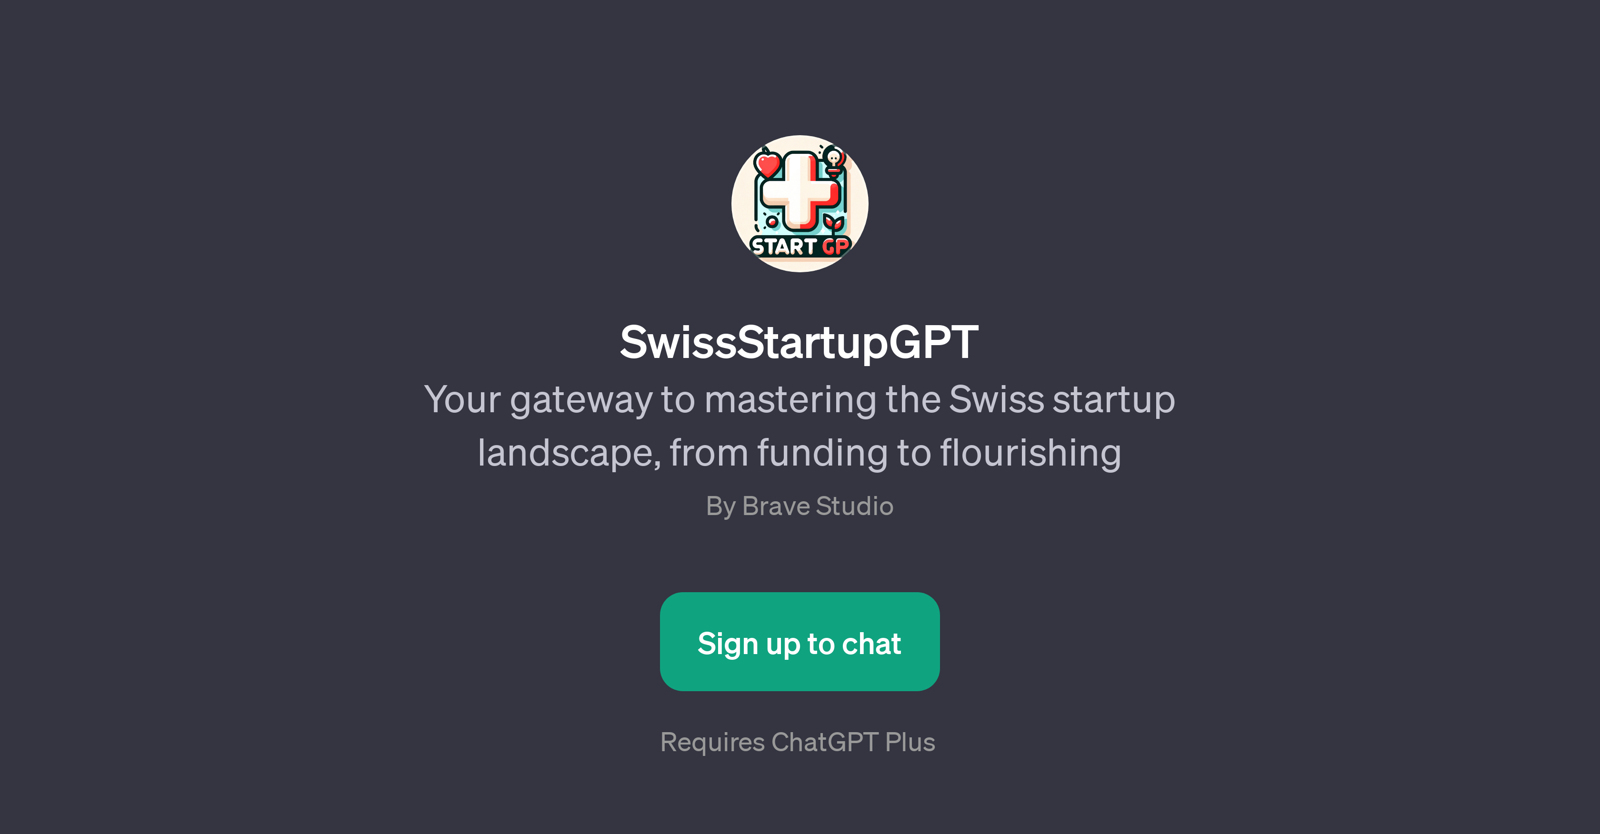 SwissStartupGPT website